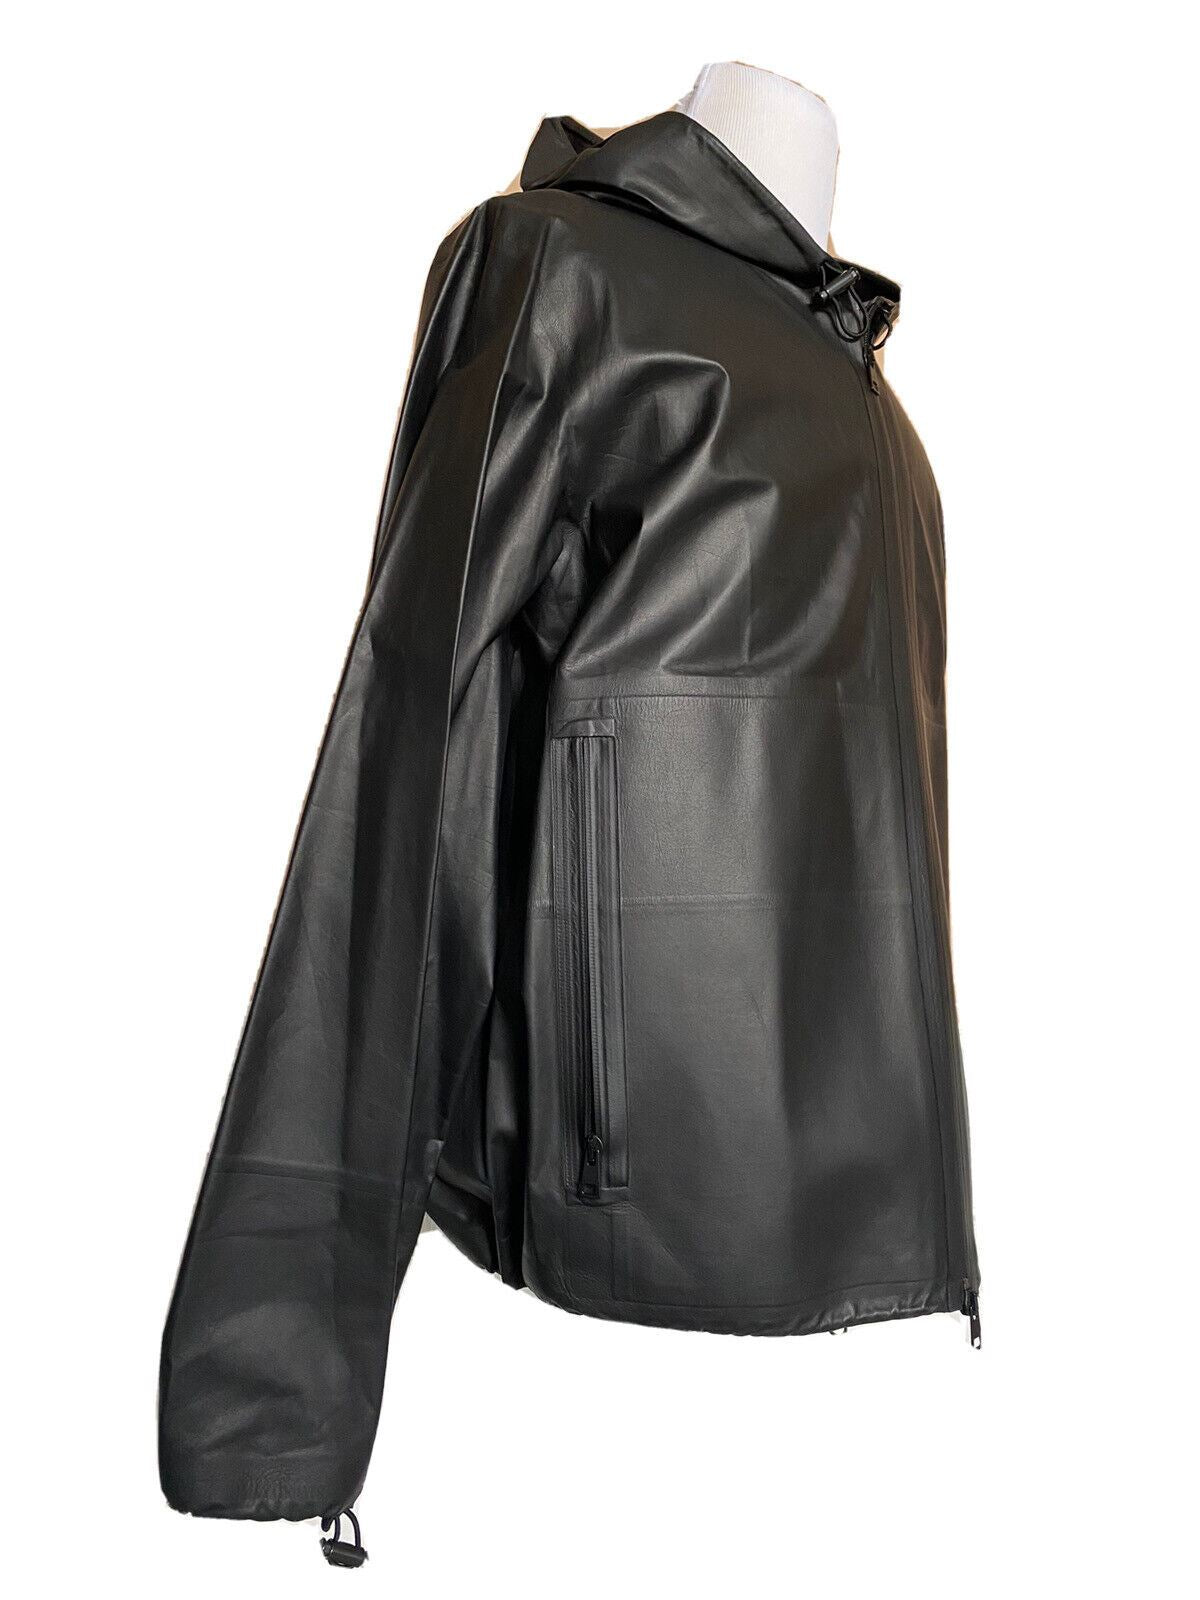 NWT 5900 долларов США Bottega Veneta Мужская легкая куртка из телячьей кожи с капюшоном Черная 44 США